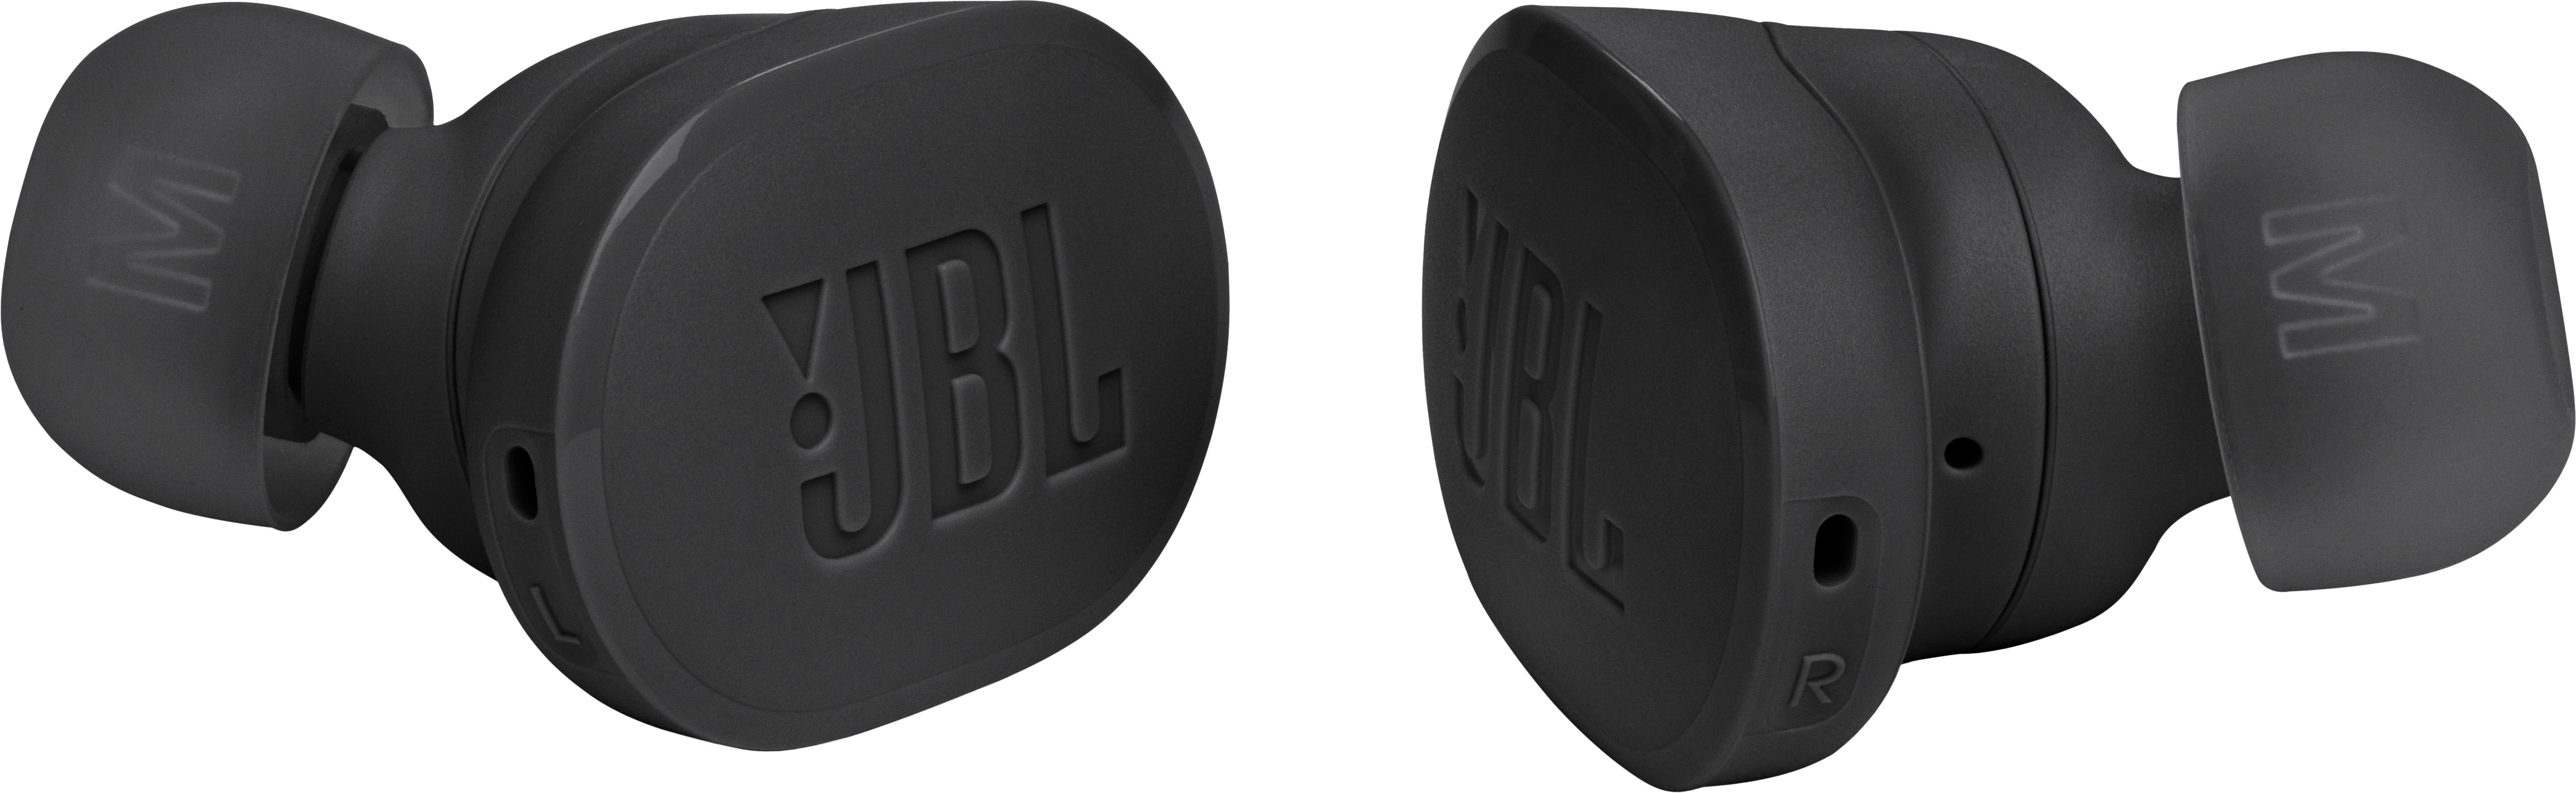 Earbuds Cancelling True Noise Best Black Tune Buy Buds JBL Wireless JBLTBUDSBLKAM -